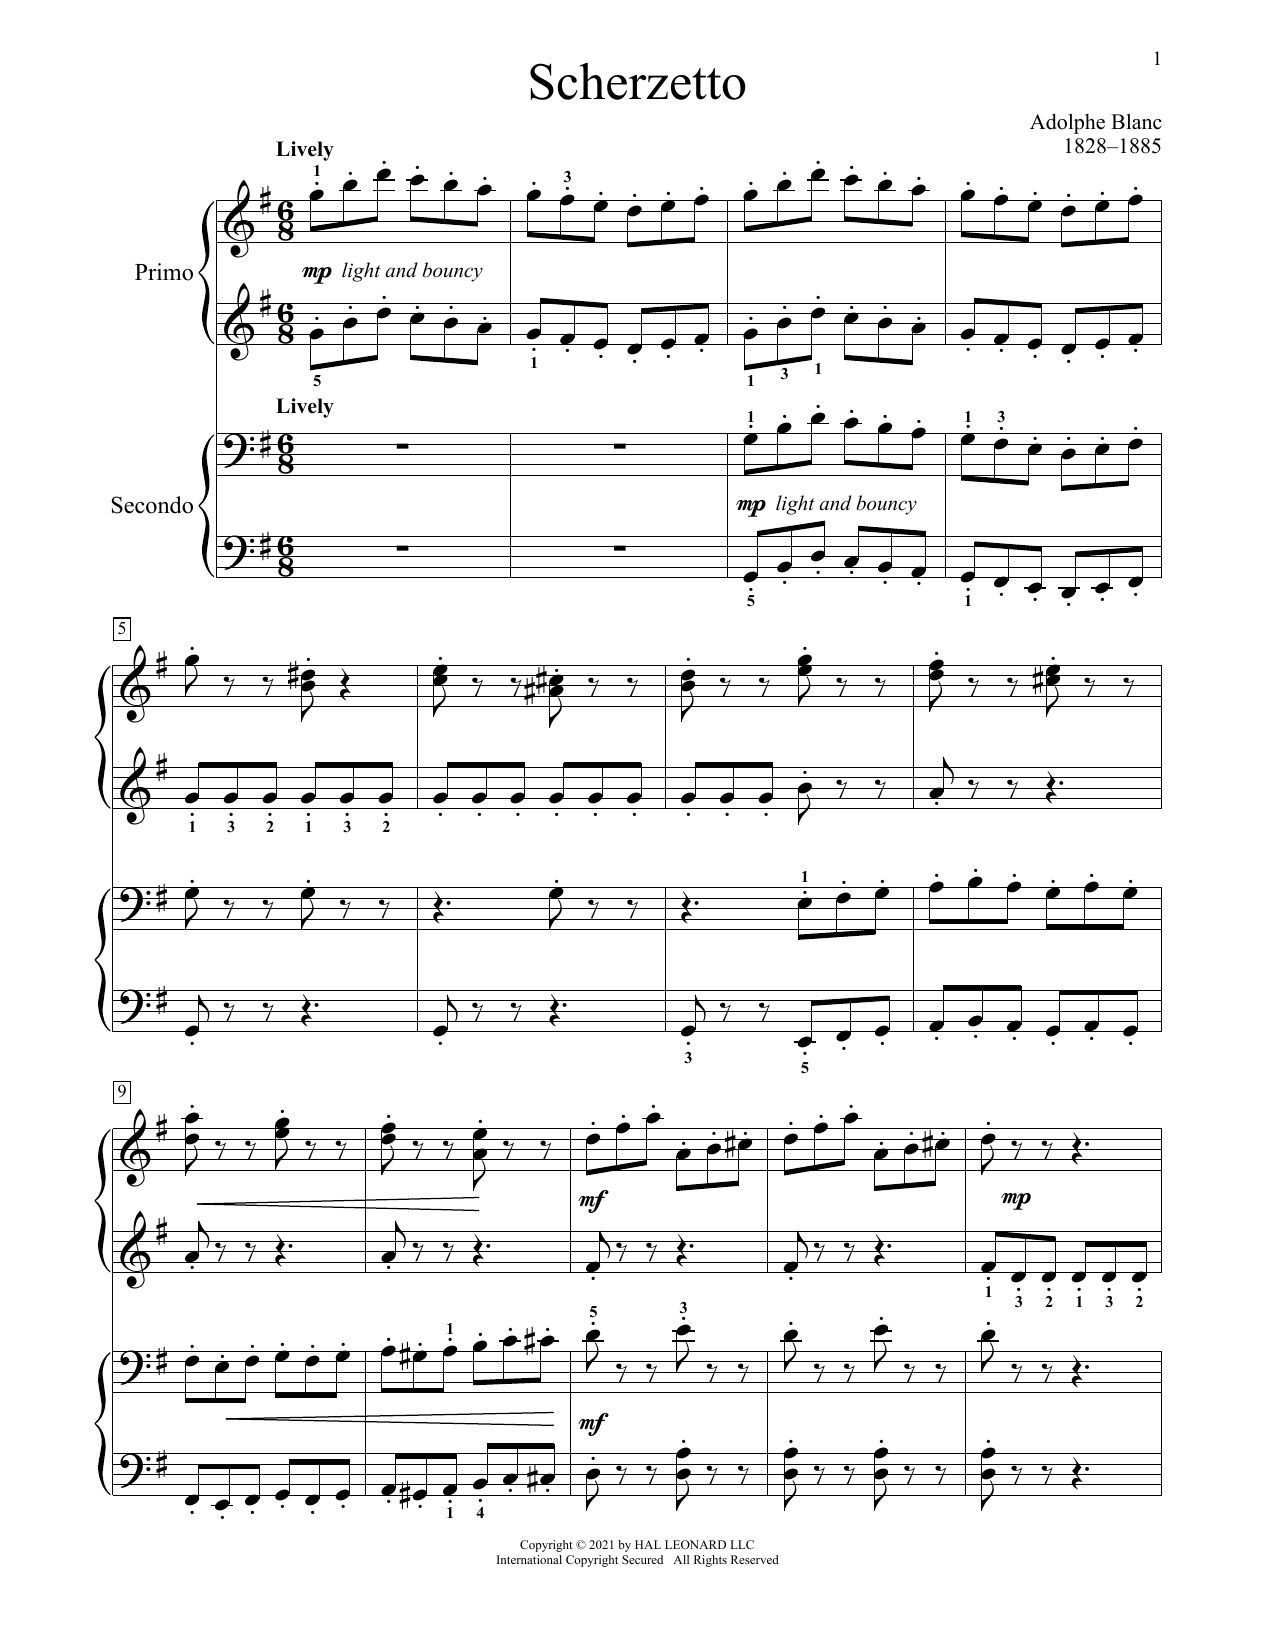 Download Adolphe Blanc Scherzetto Sheet Music